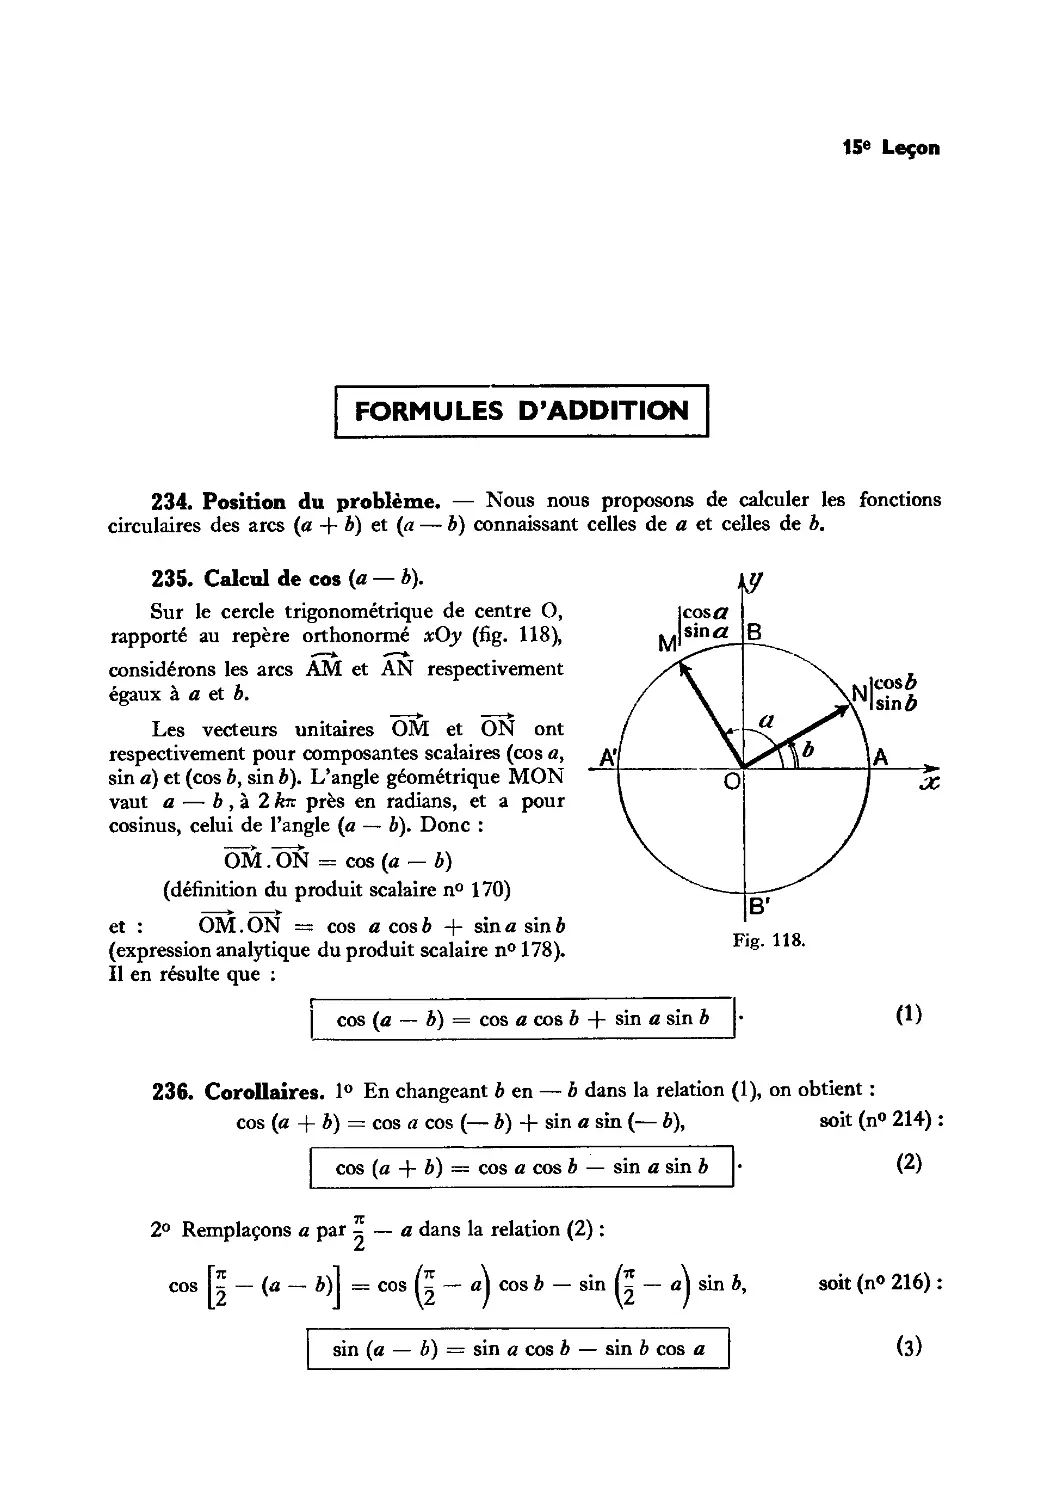 Leçon 15 — Formules d’addition et de multiplication — Transformations trigonométriques
236. Corollaires